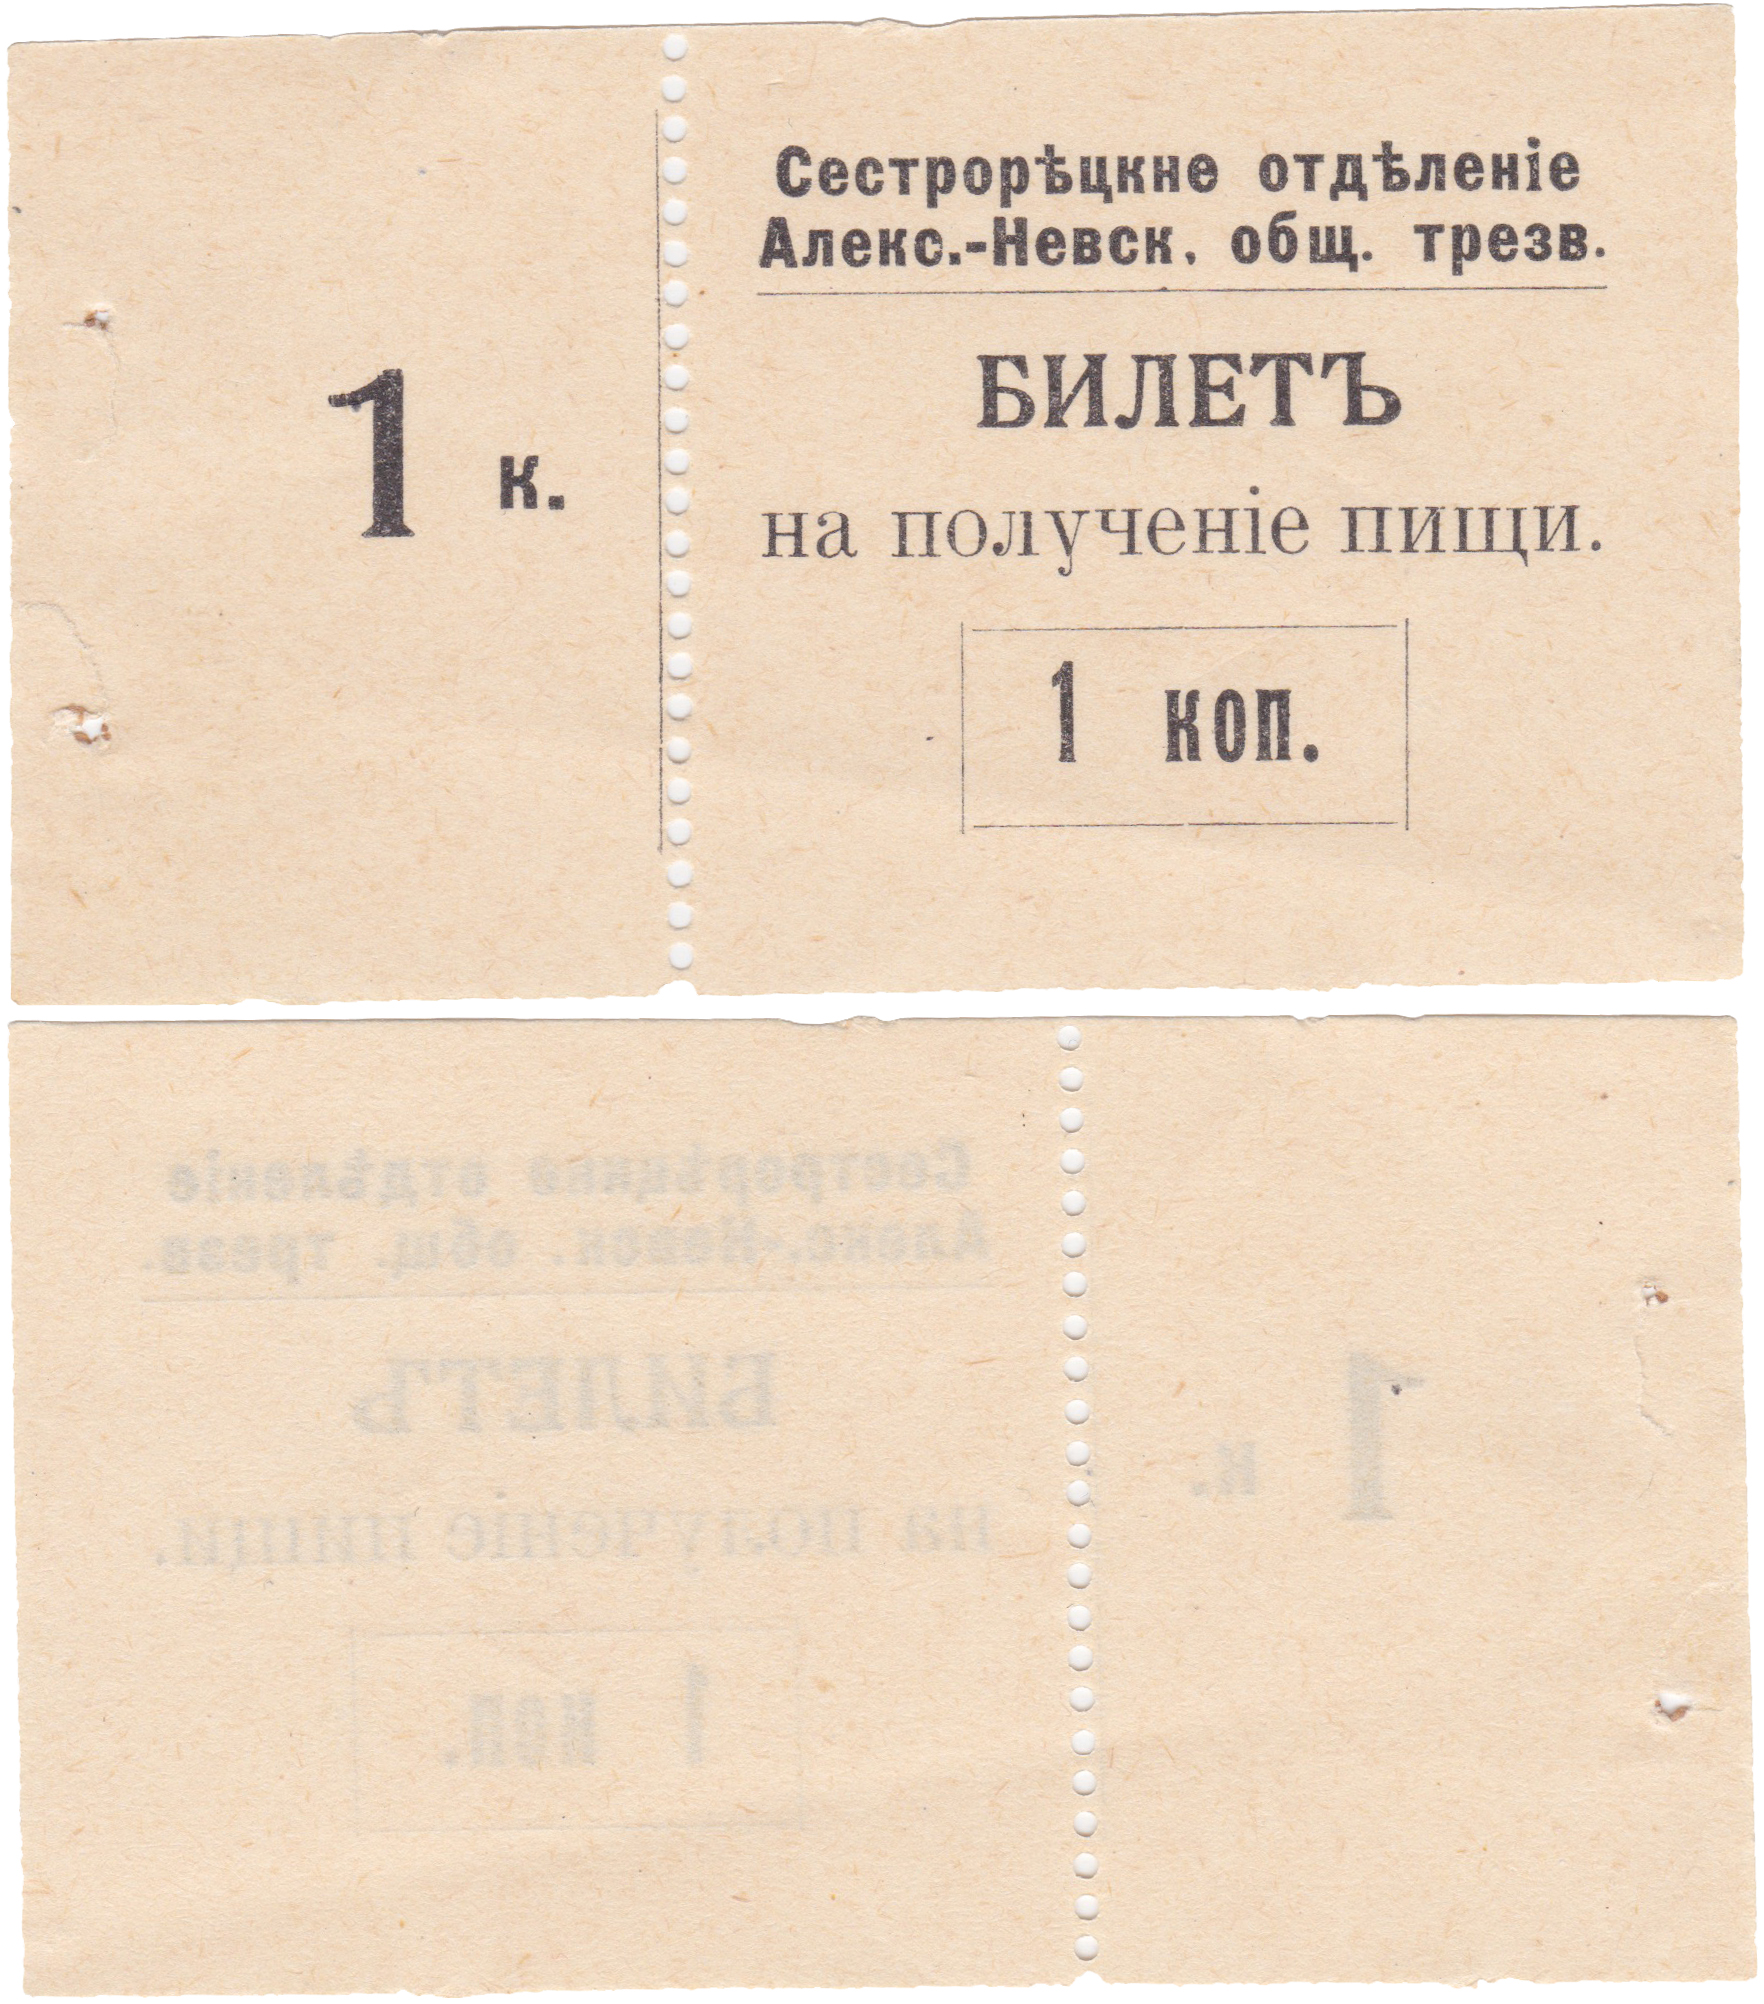 Билет на получение пищи 1 Копейка 1906 год. Сестрорецкое отделение Александро-Невского общества трезвости